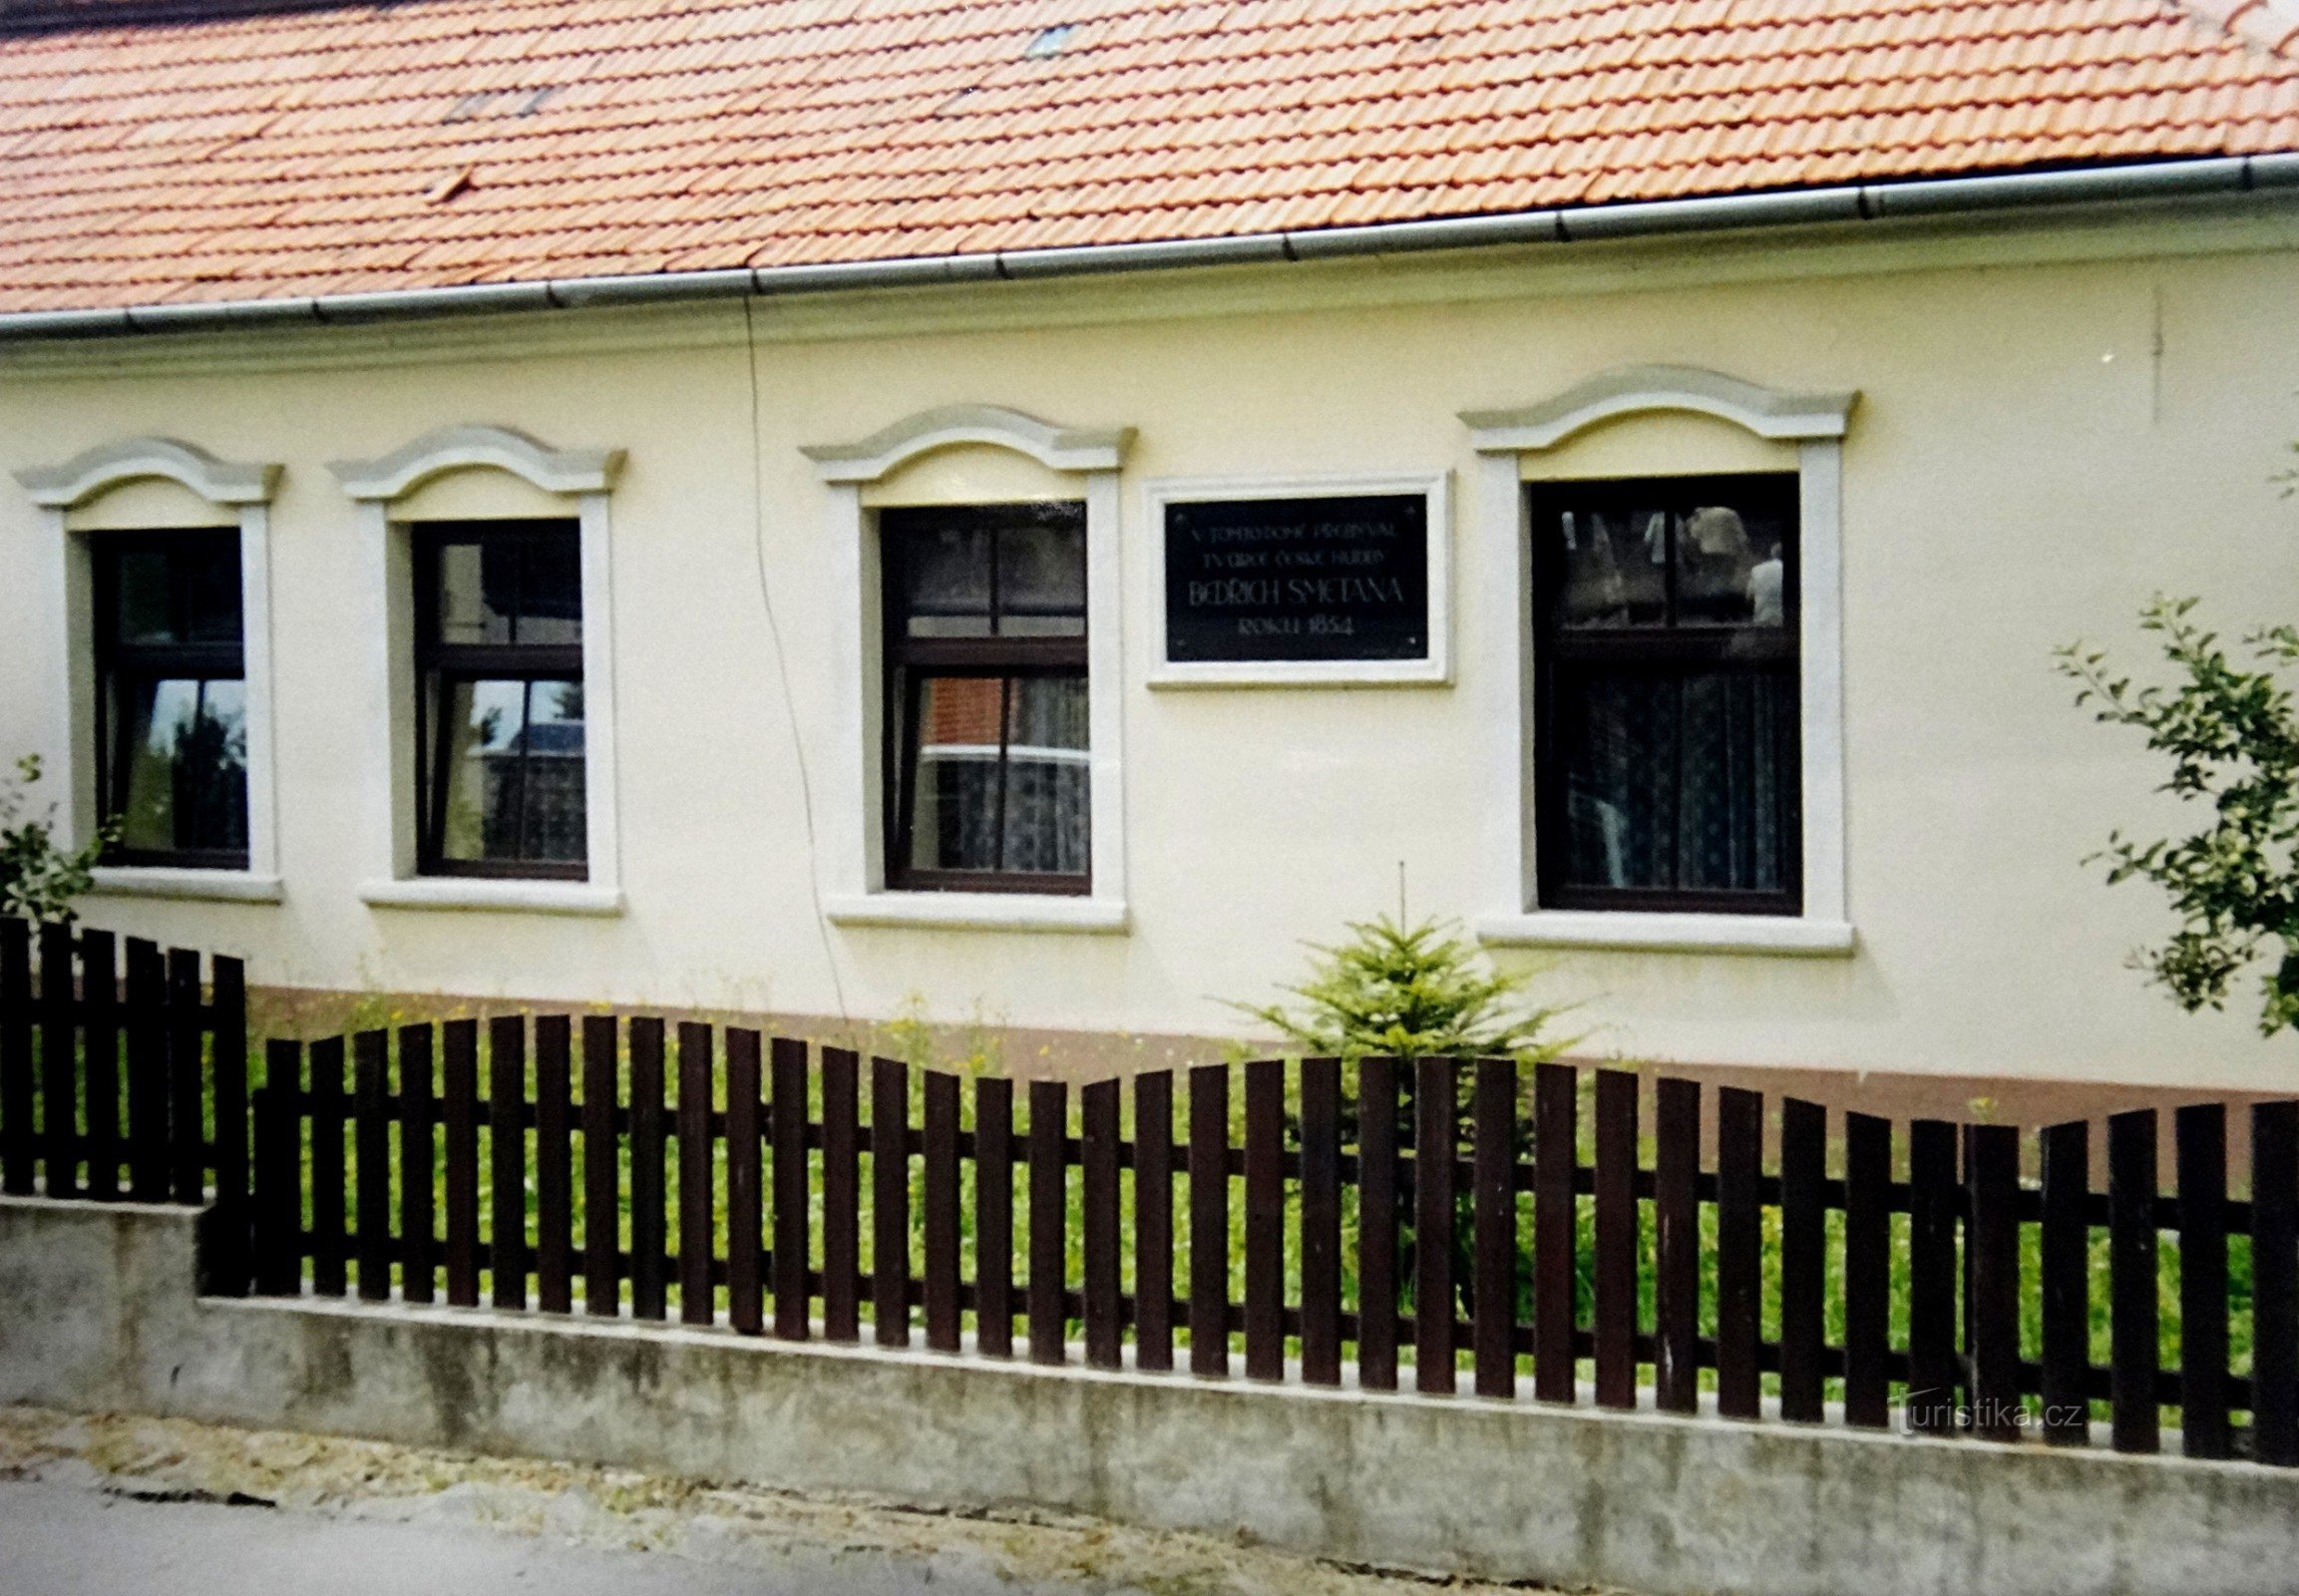 Týn nad Bečvou hus, hvor familien Smetanov boede